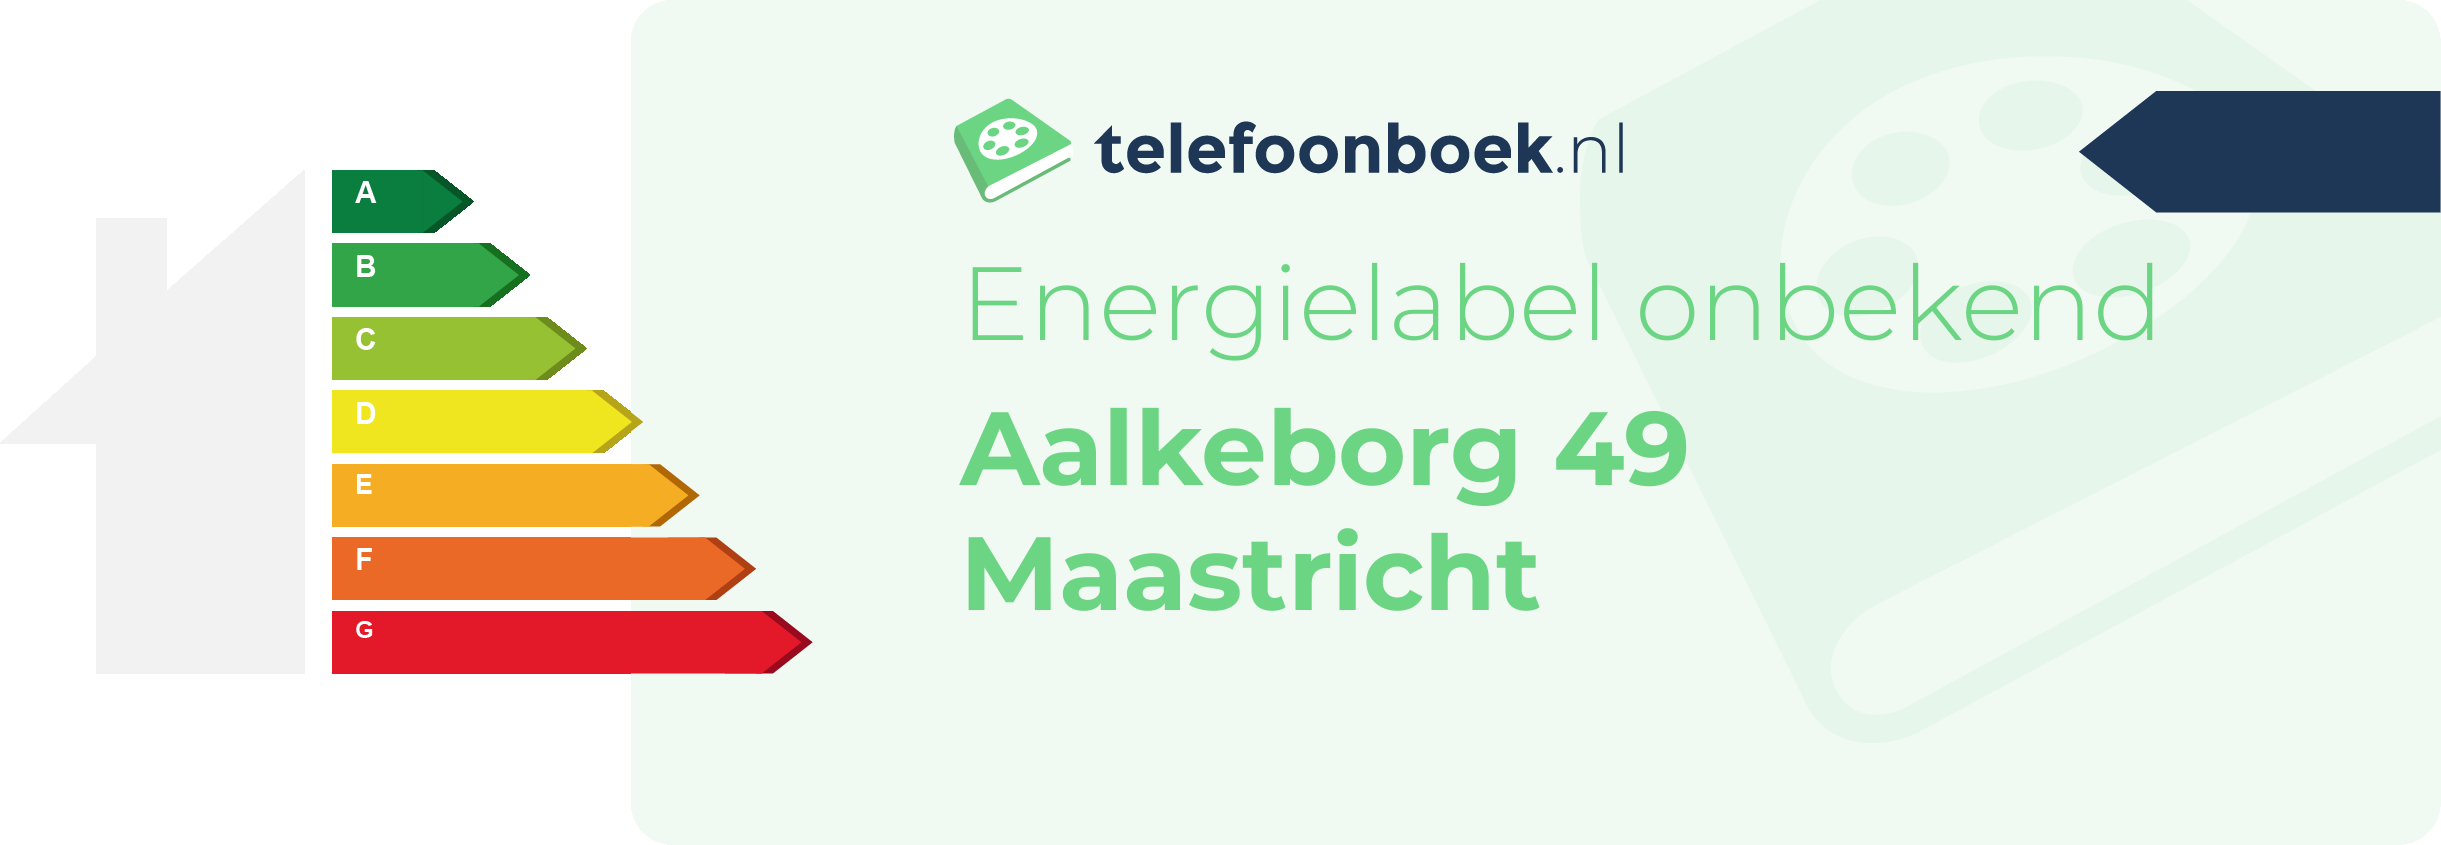 Energielabel Aalkeborg 49 Maastricht